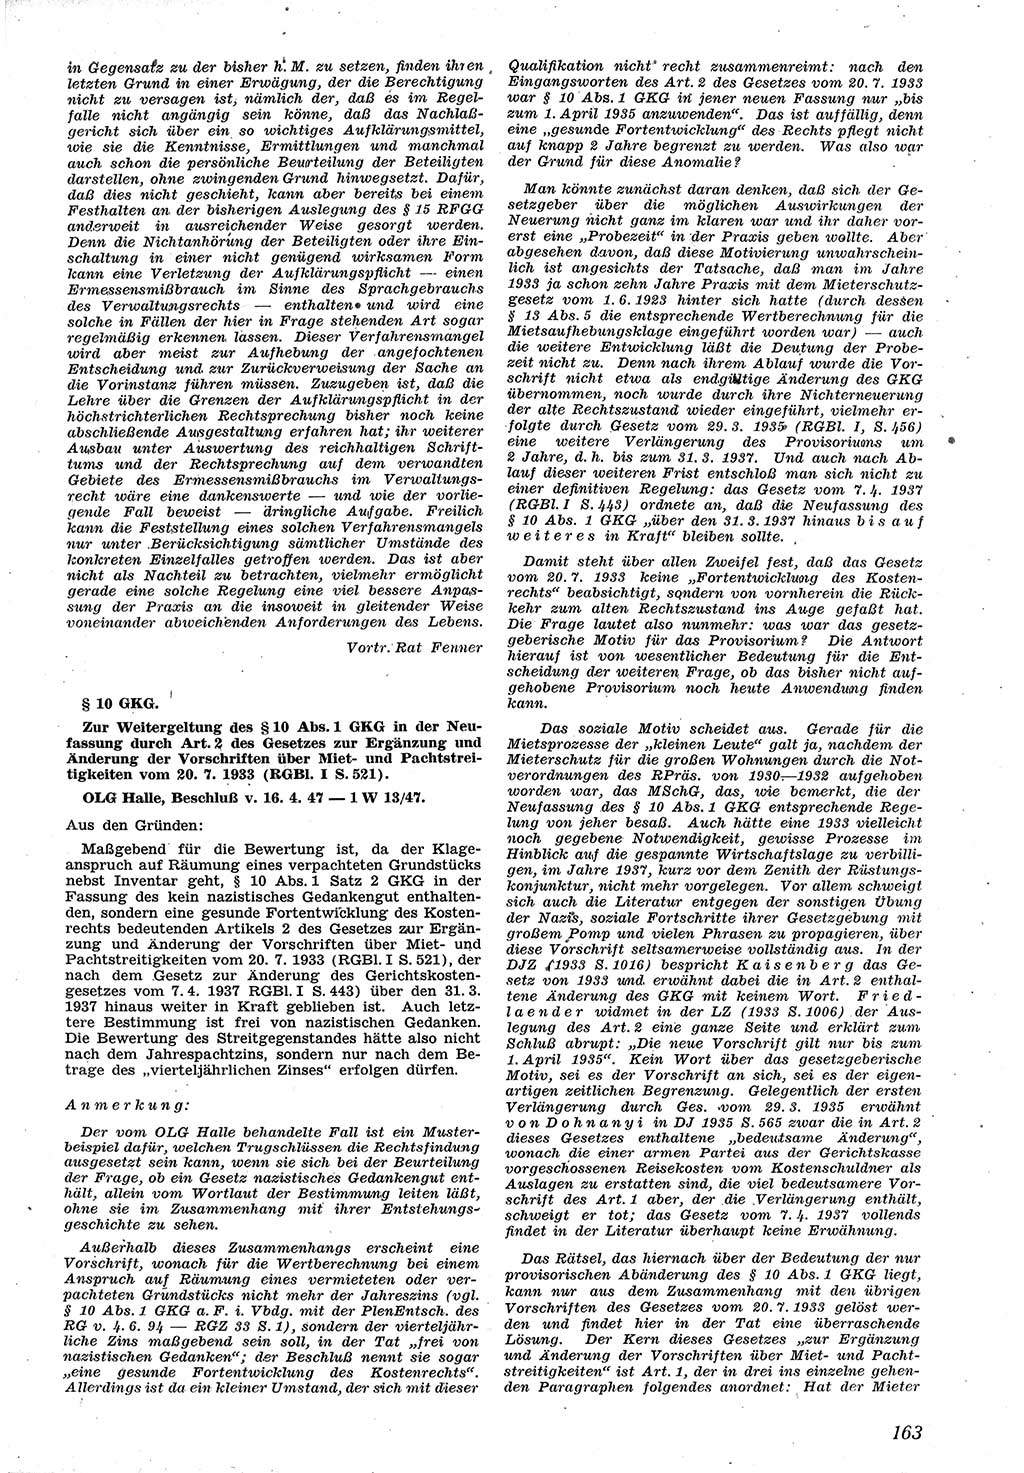 Neue Justiz (NJ), Zeitschrift für Recht und Rechtswissenschaft [Sowjetische Besatzungszone (SBZ) Deutschland], 1. Jahrgang 1947, Seite 163 (NJ SBZ Dtl. 1947, S. 163)